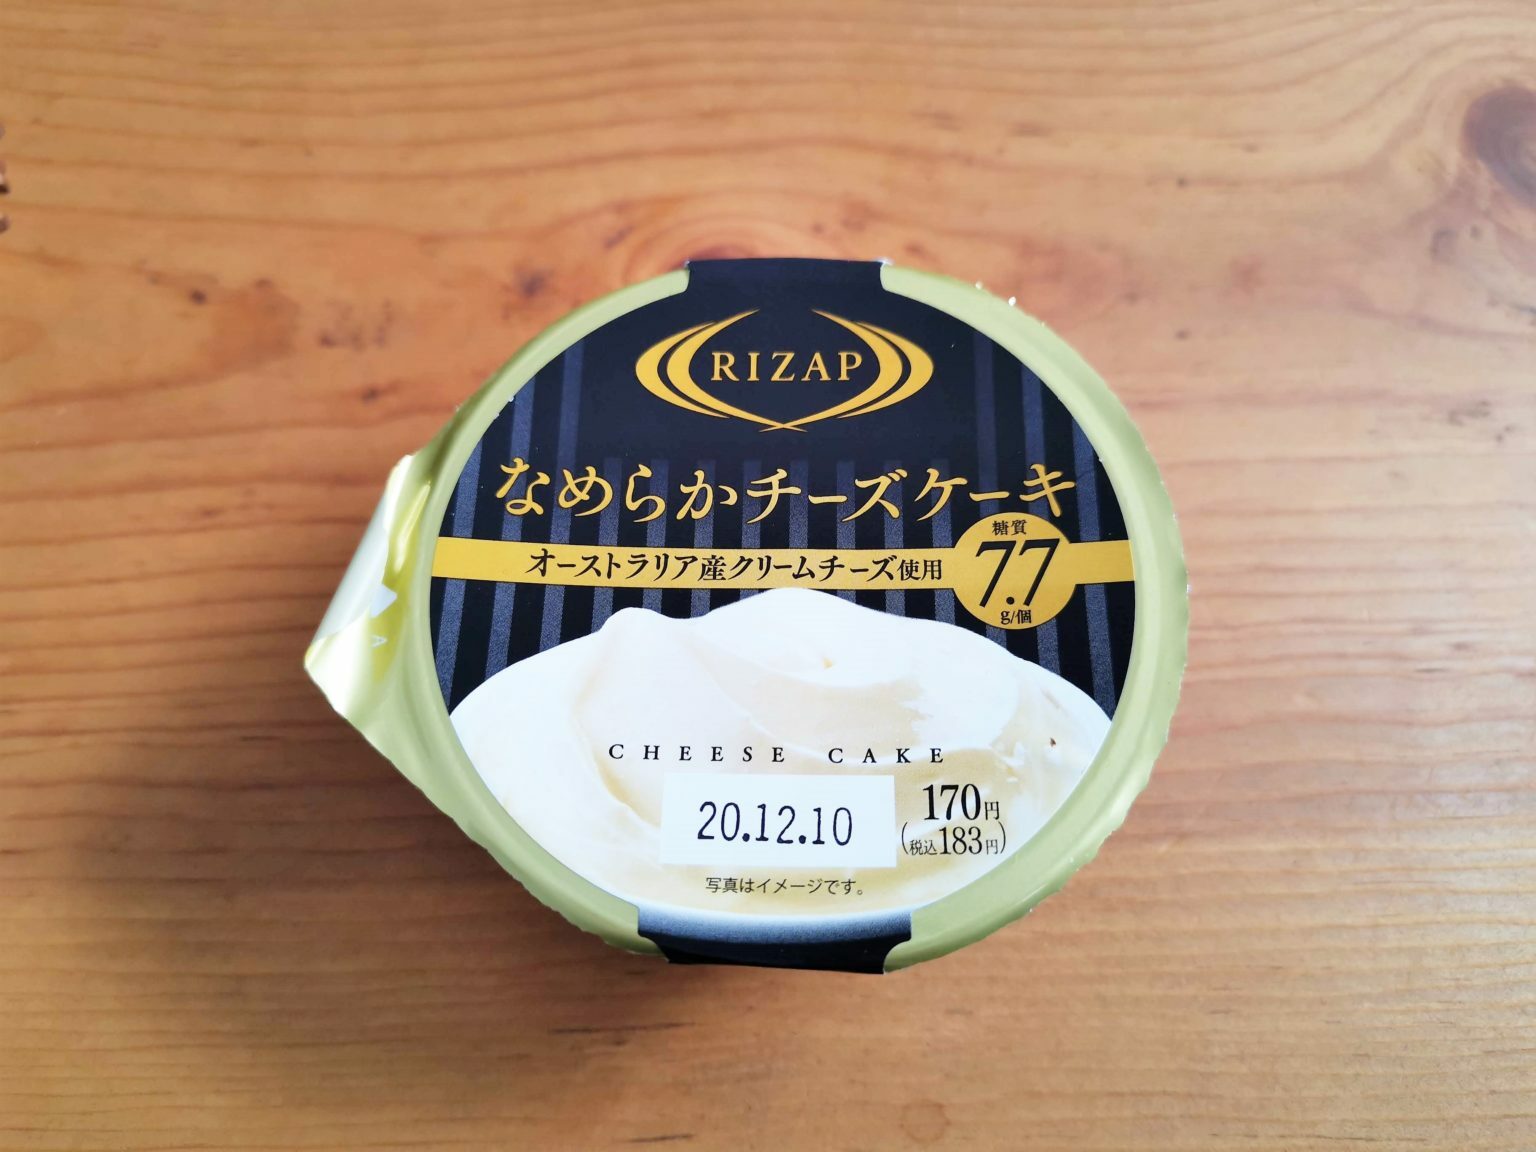 過去にファミリーマートで販売されていた「RIZAP なめらかチーズケーキ」。トーラクが製造していた(2020年12月頃)。